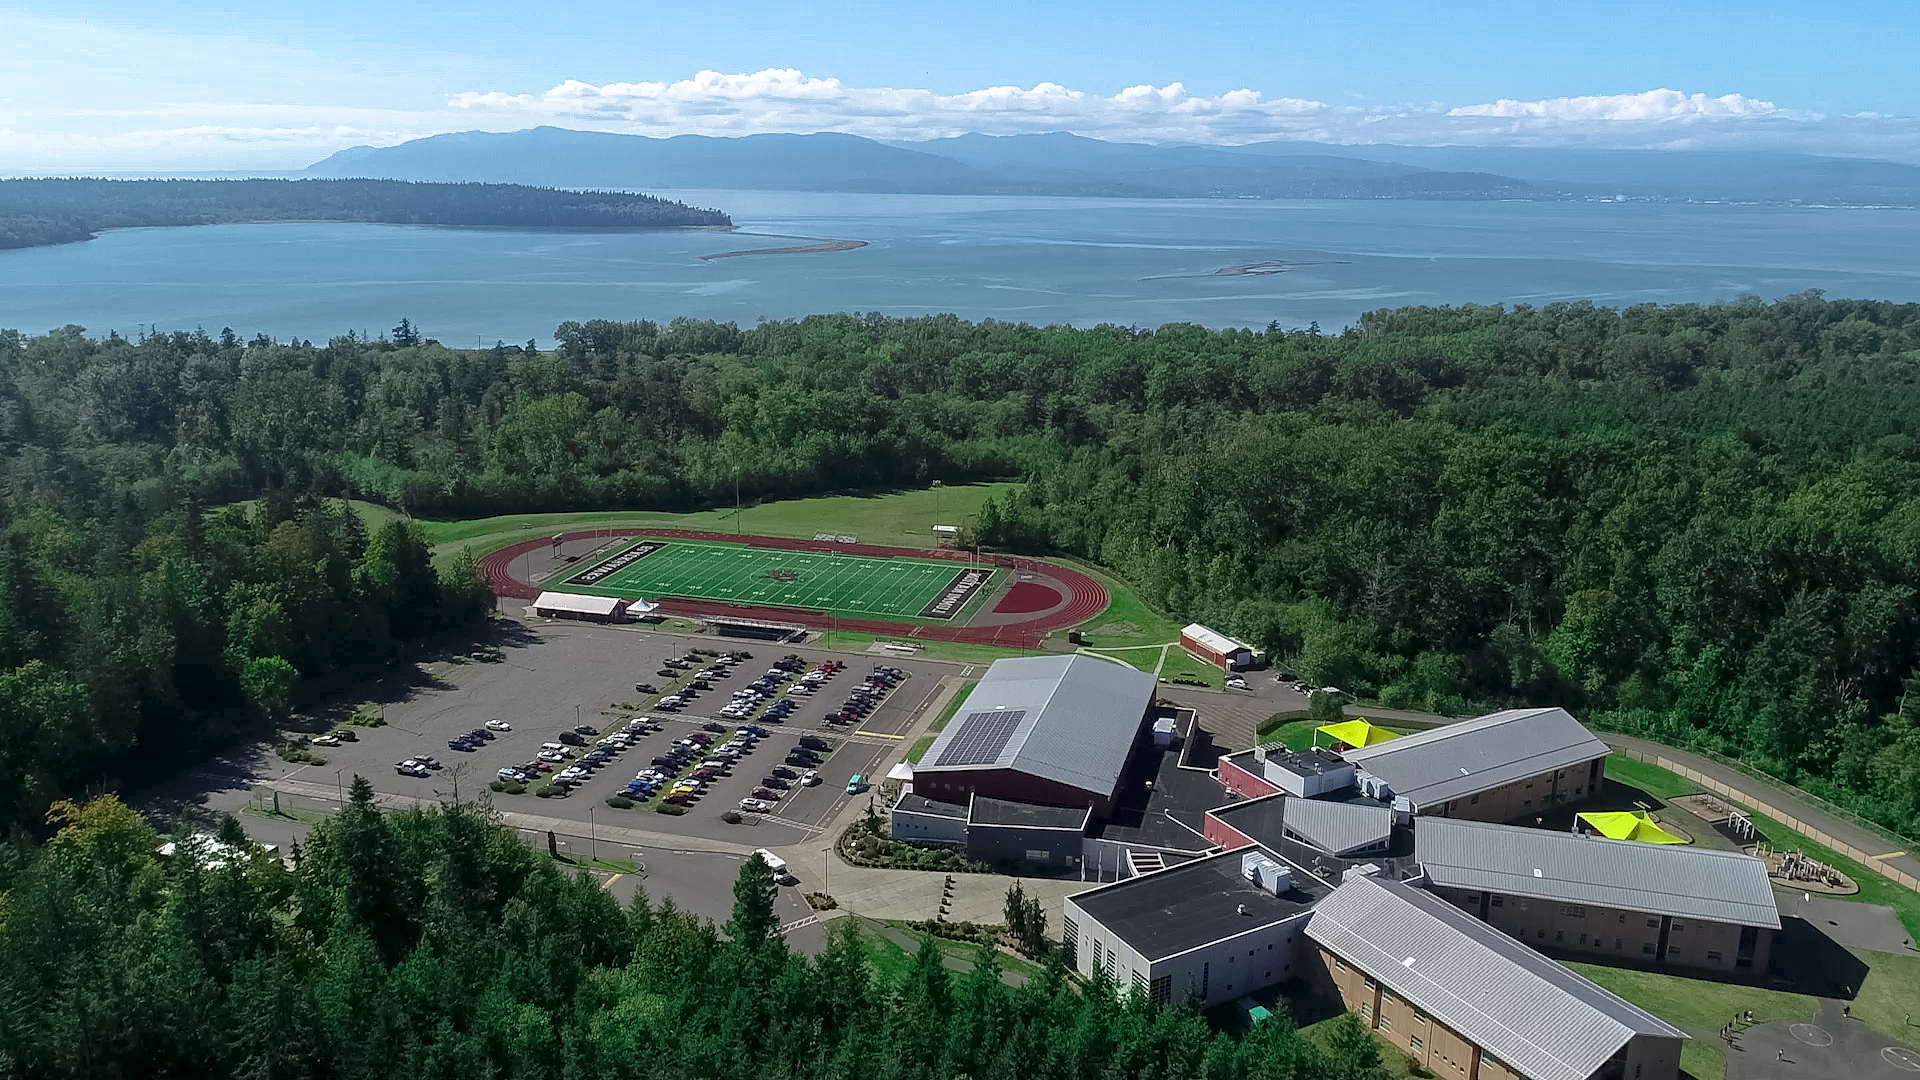 Aerial view of Lummi Nation School campus